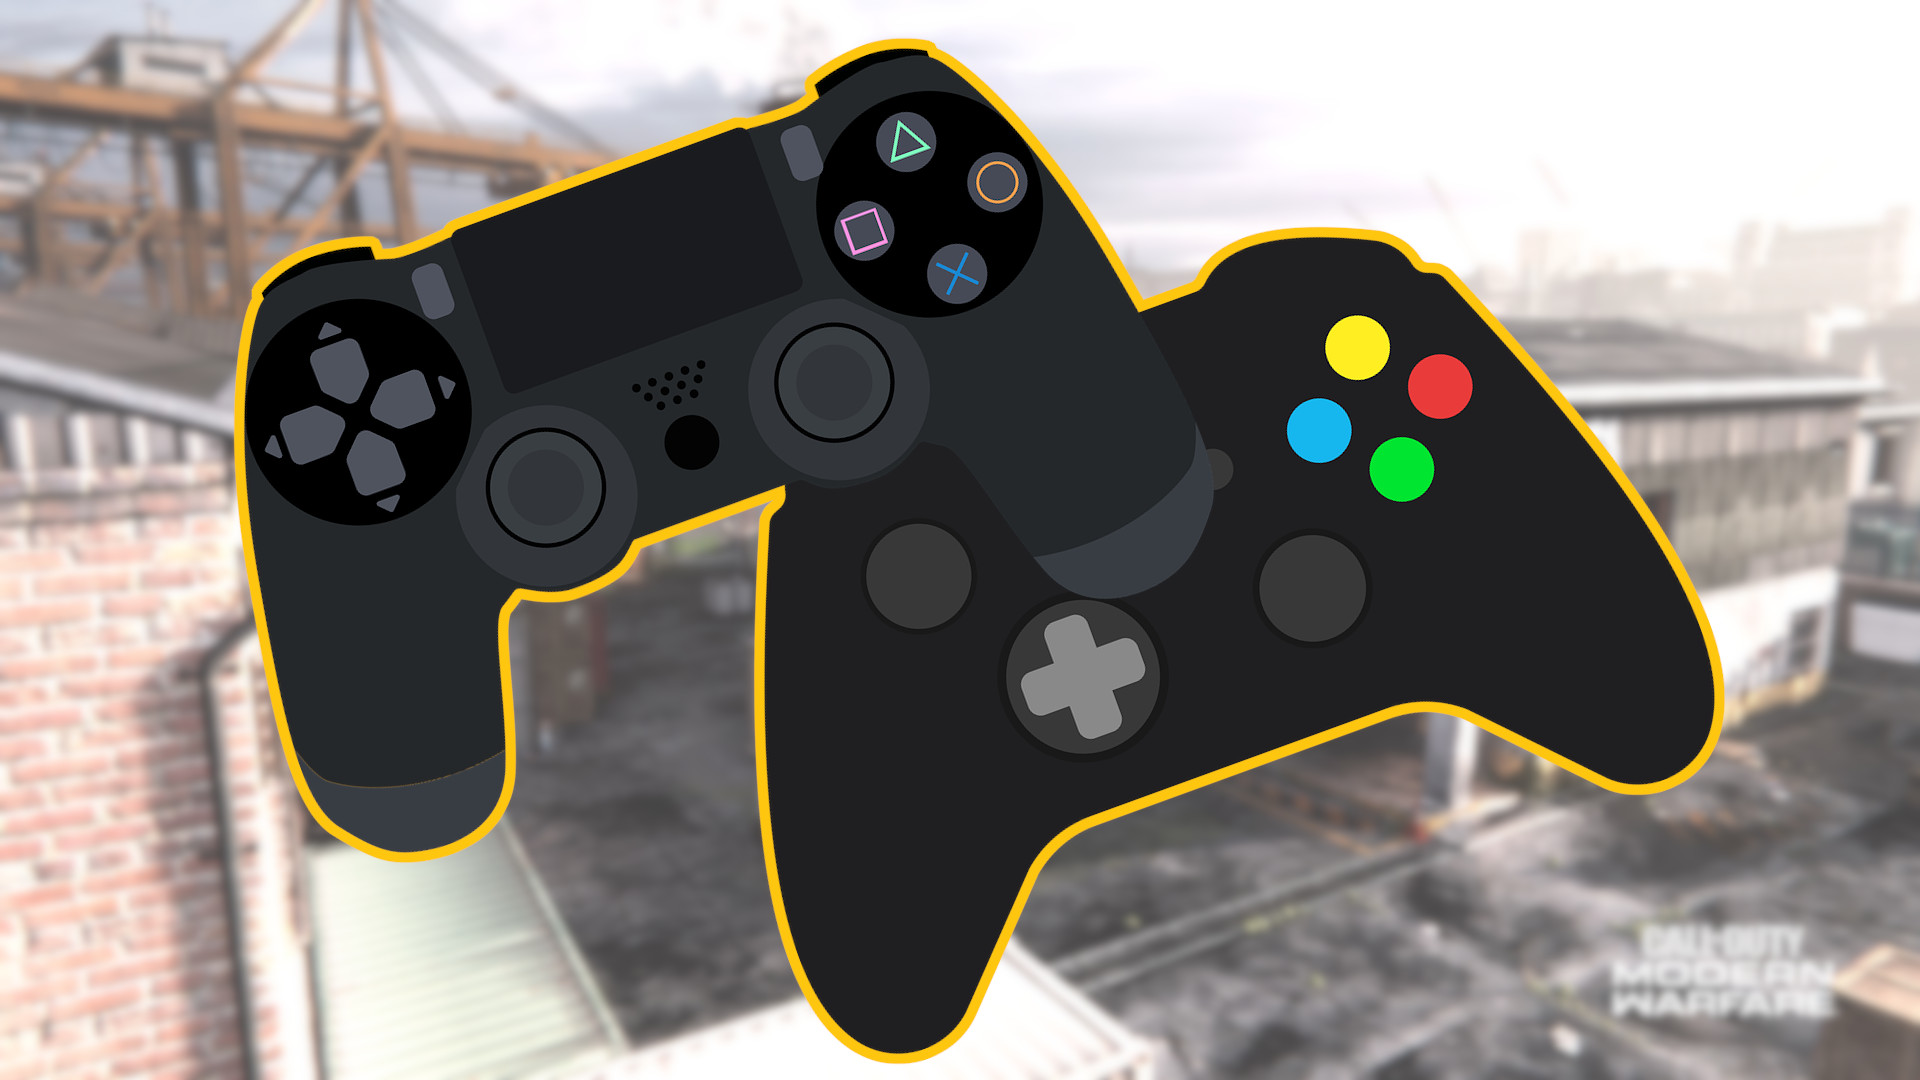 mezclador Expulsar a Hueco CoD Mobile mit Controller der PS4 & Xbox spielen - So geht's